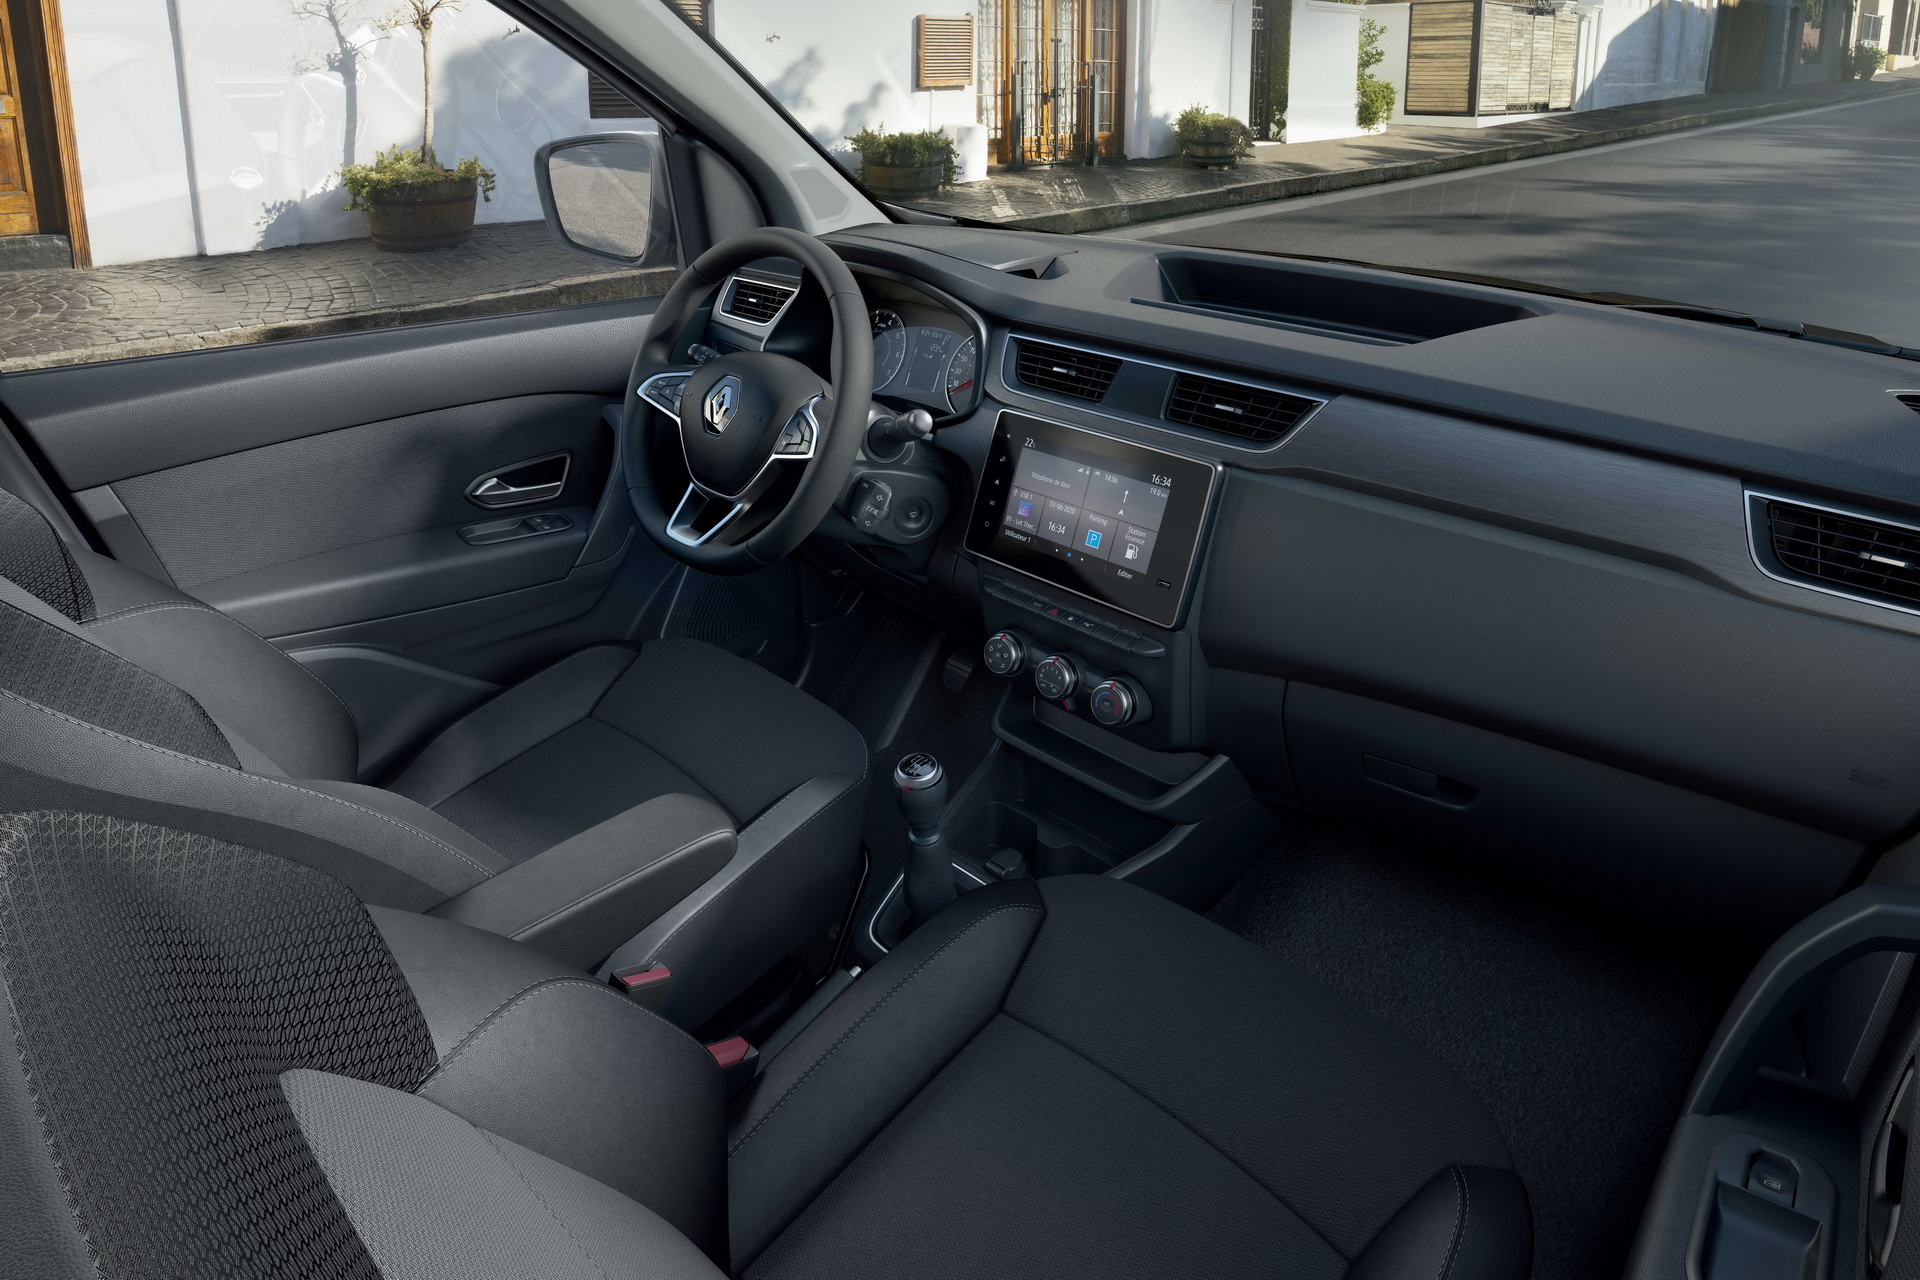 Yeni nesil 2021 Renault Kangoo tanıtıldı: İşte tasarımı ve özellikleri